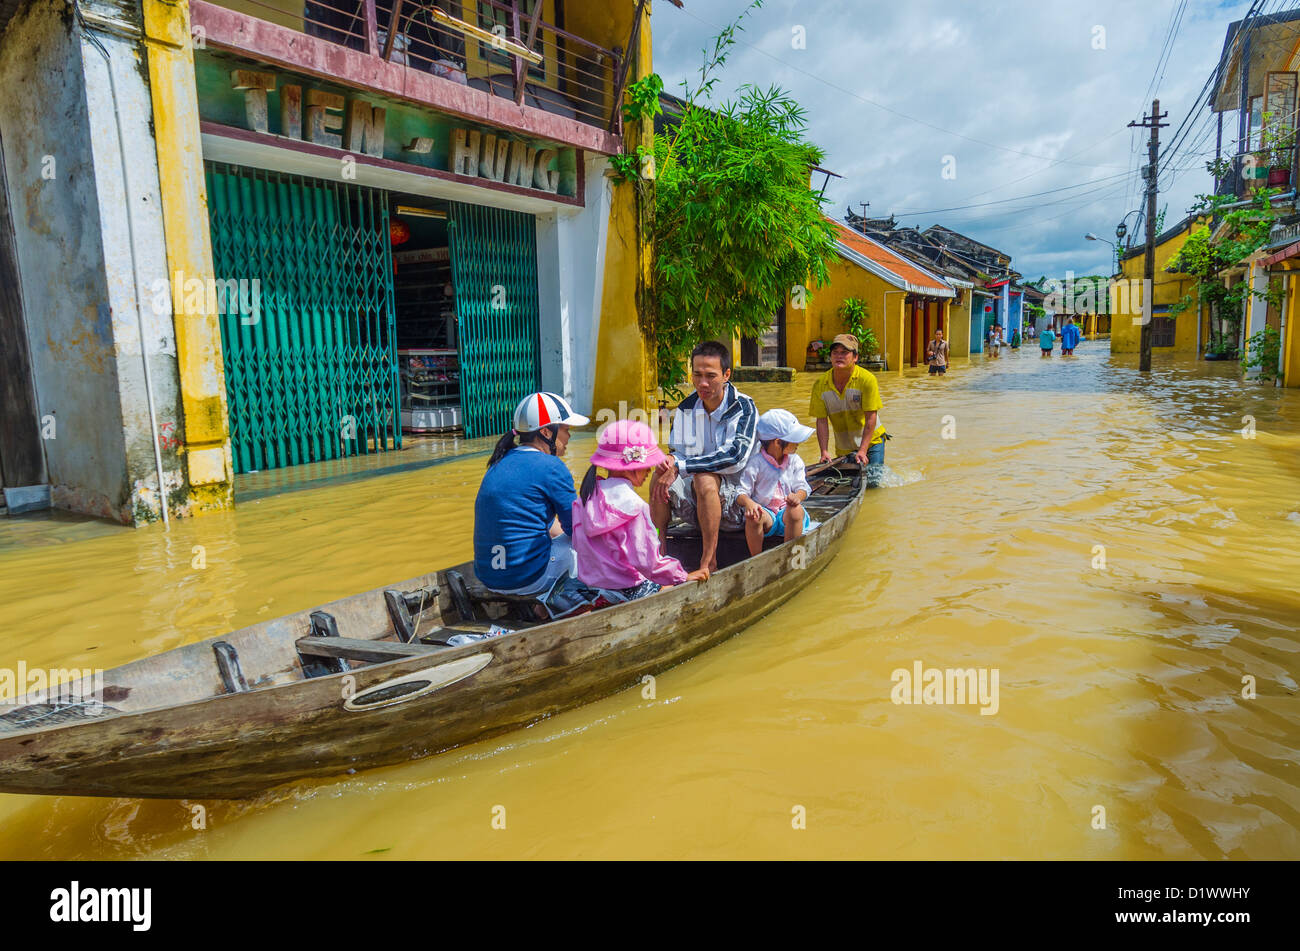 Familie in lokalen Boot transportiert werden, bei Hochwasser, Hoi an, Vietnam Stockfoto